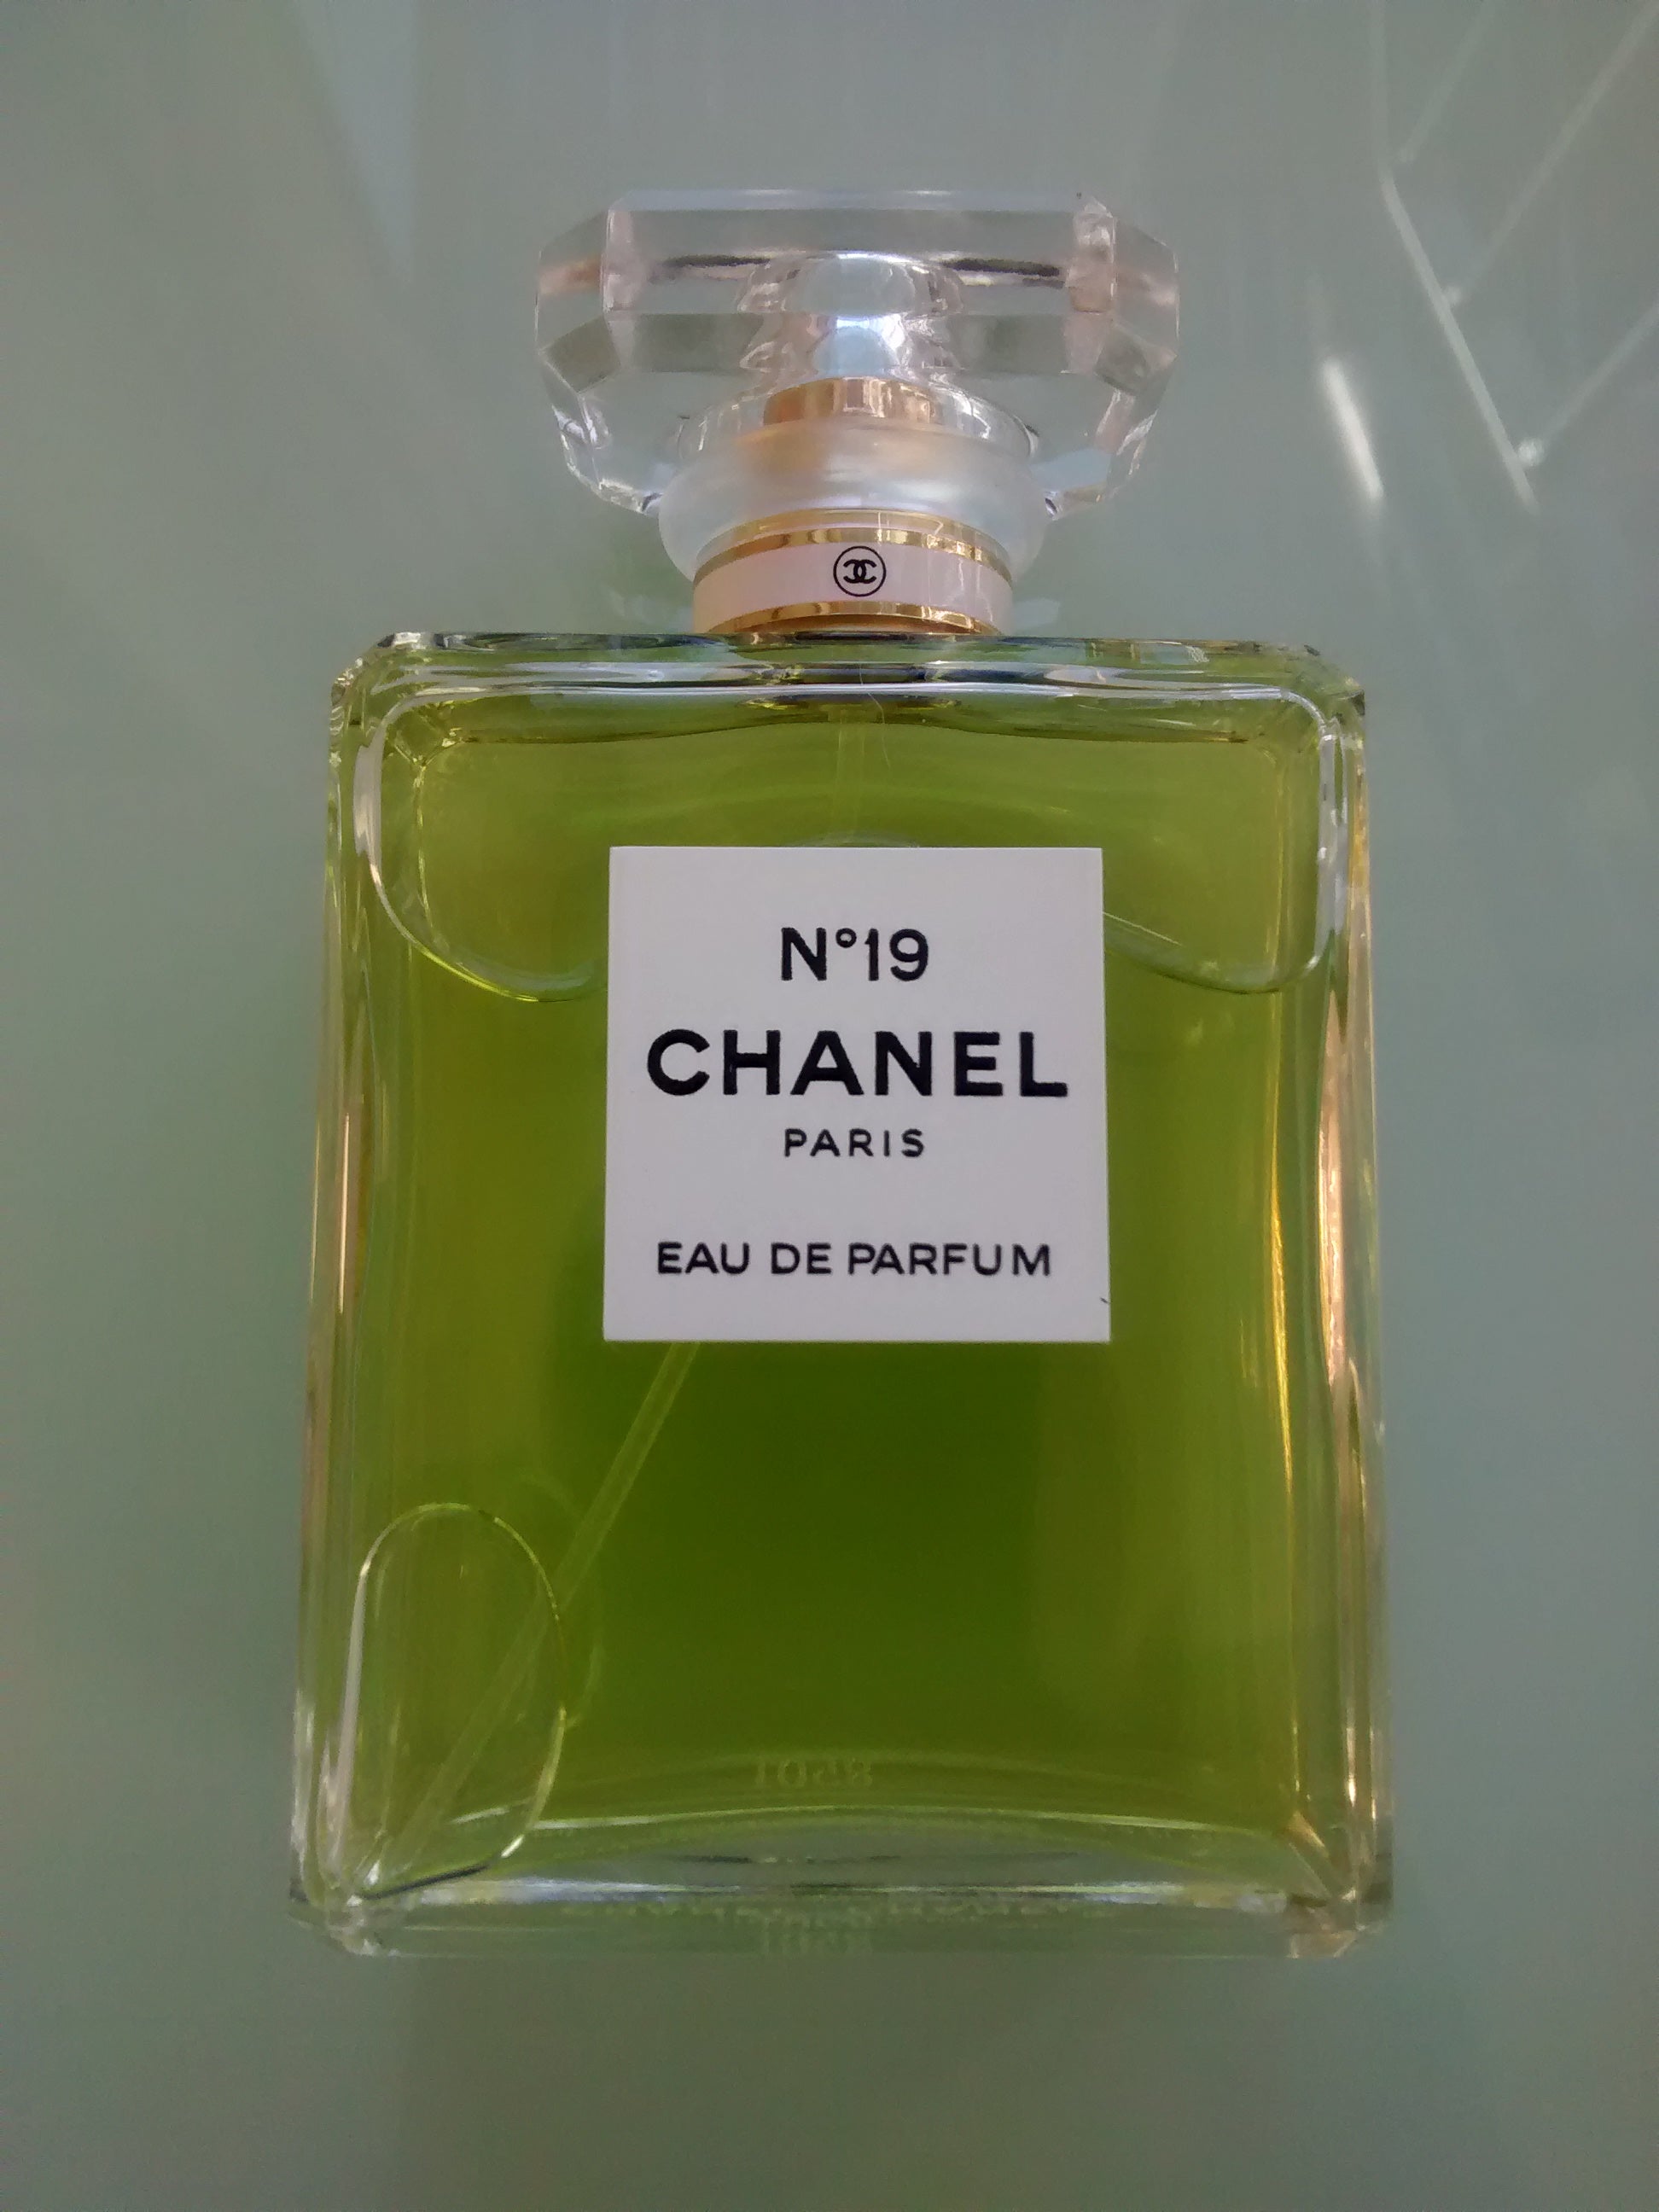 Chanel N19 - Eau De Parfum - Perfume sample - 2 ml